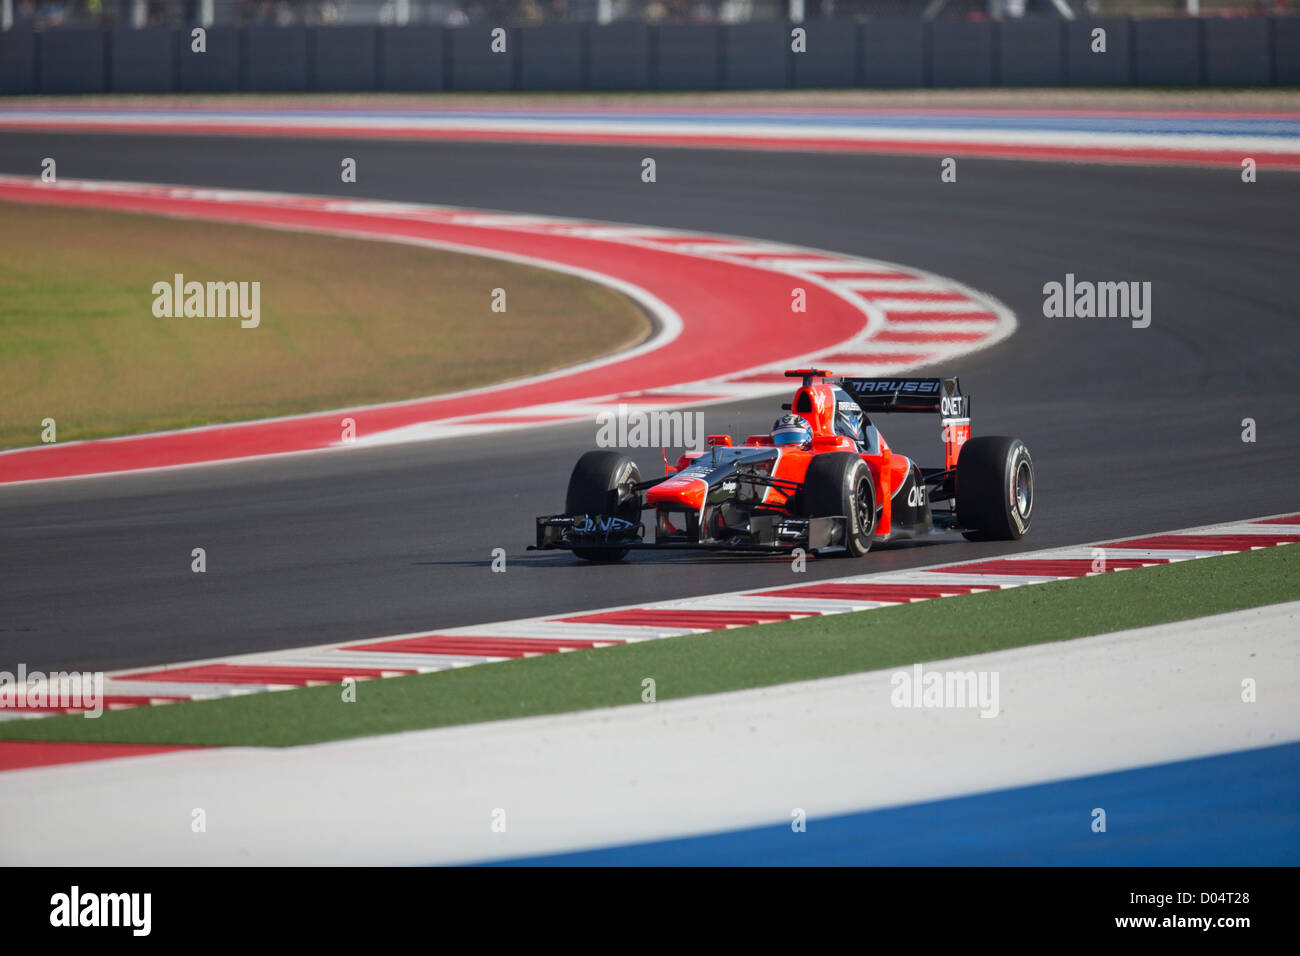 Timo Glock, pilote de Marussia F1 au cours de l'exercice de la United States Grand Prix sur le circuit des Amériques la voie près de Austin. Banque D'Images